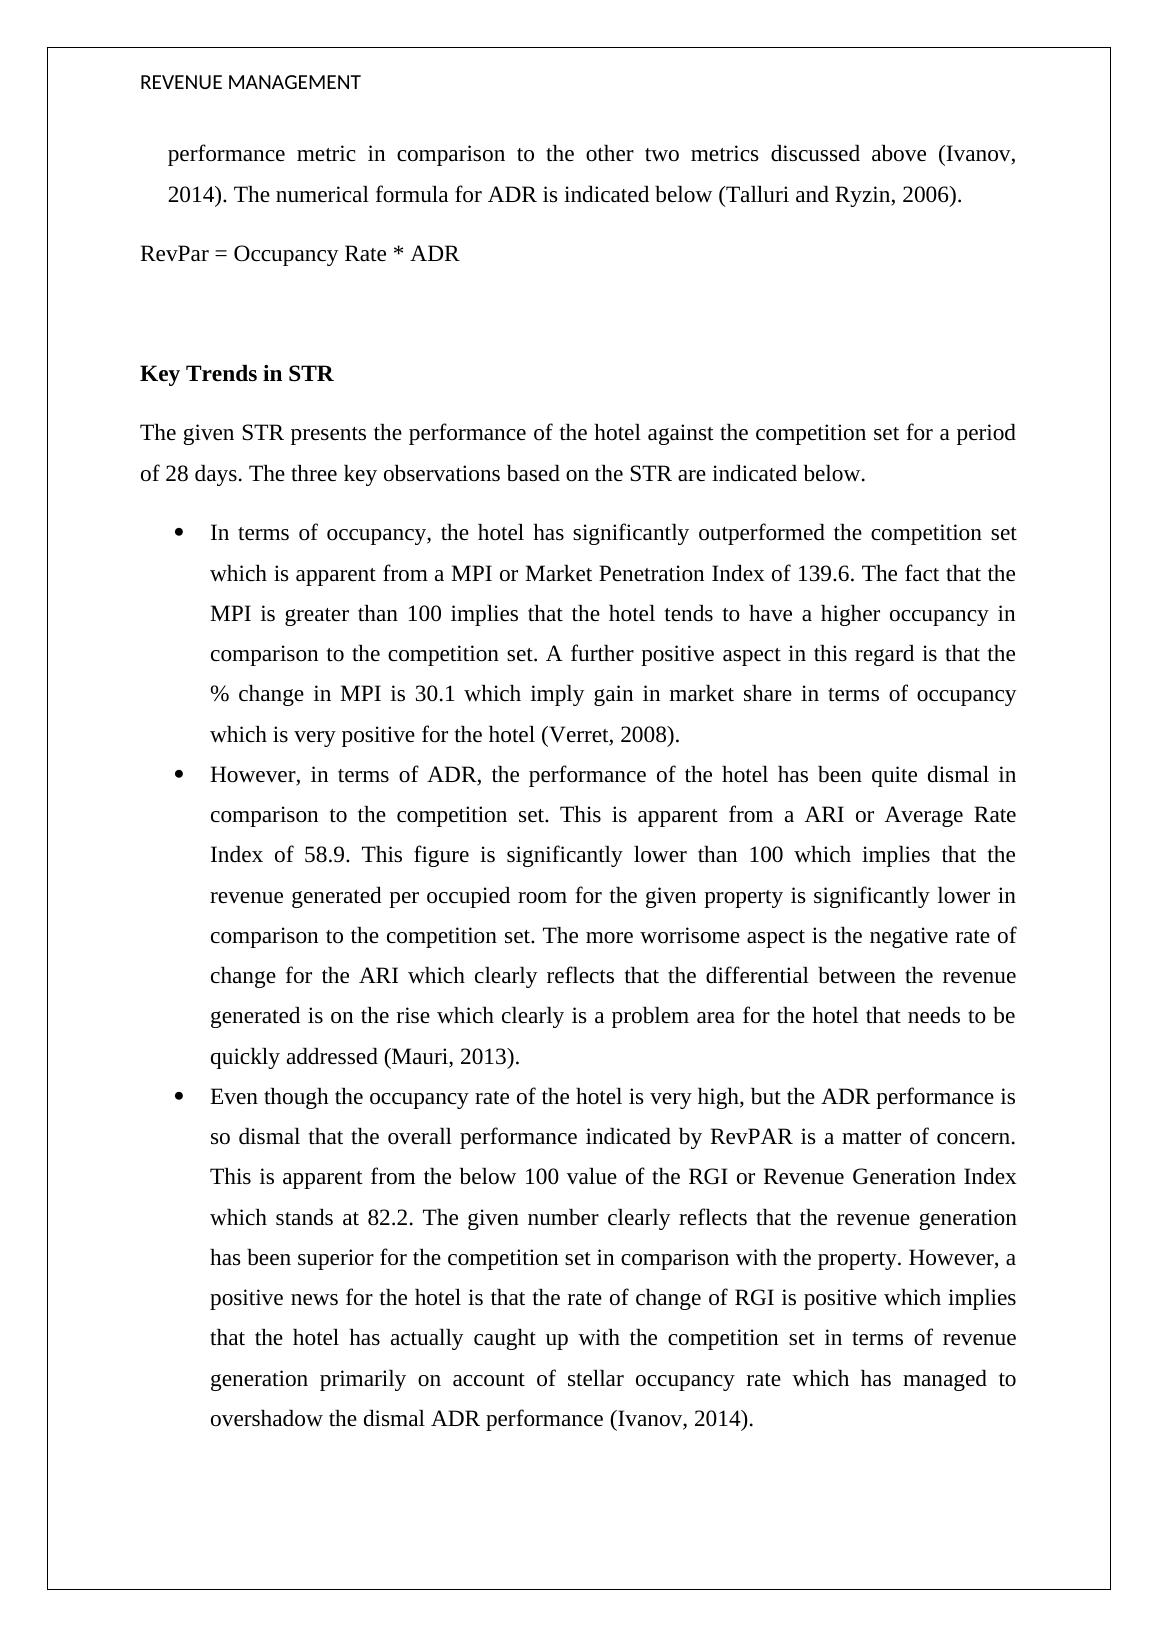 BHO3312 - Revenue Management, STR Report_3